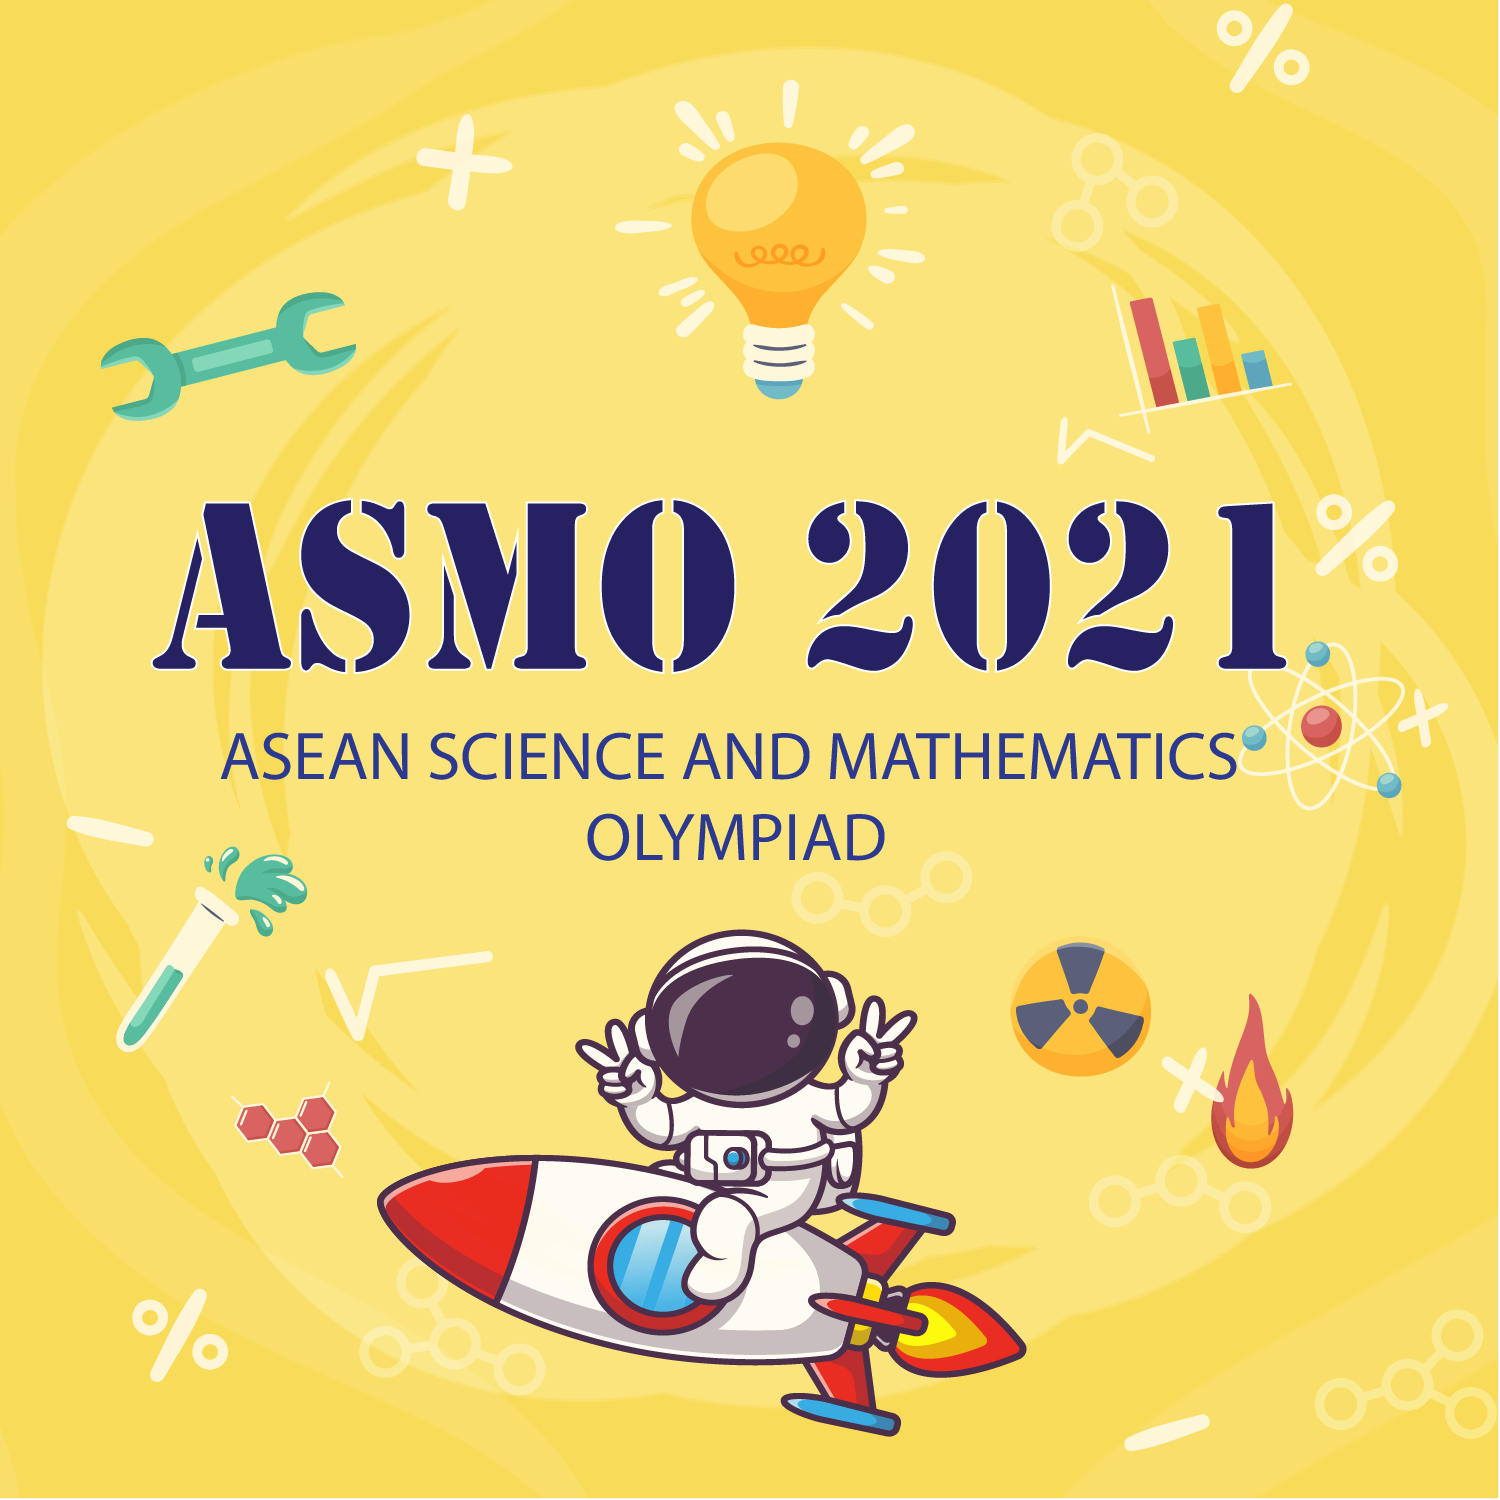 Hành trình ASMO 2021 chính thức bắt đầu